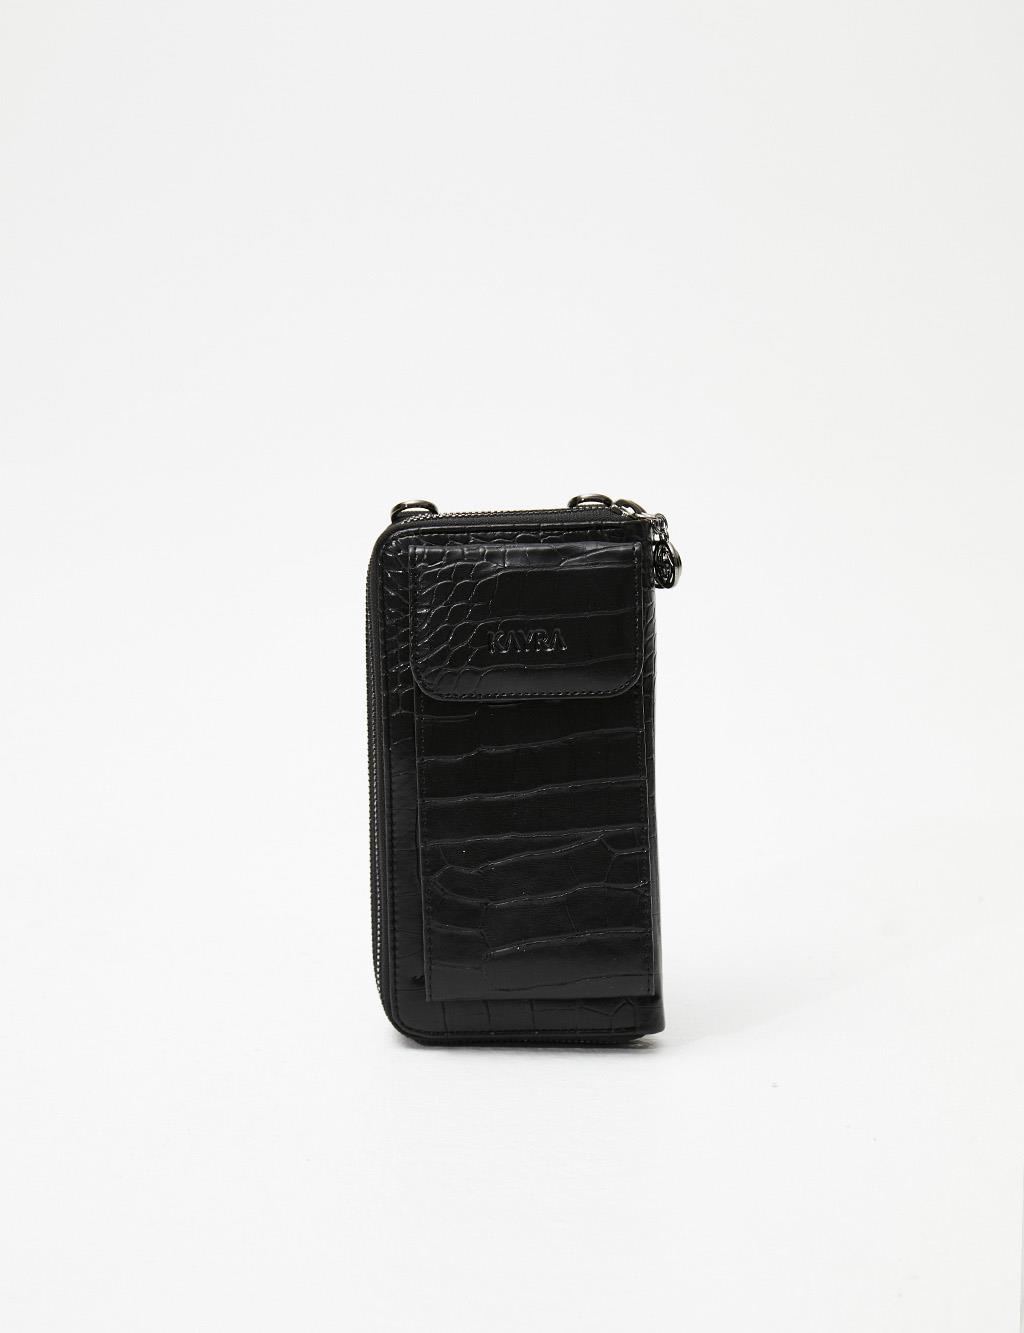 Croco Patterned Multifunctional Wallet Bag Black